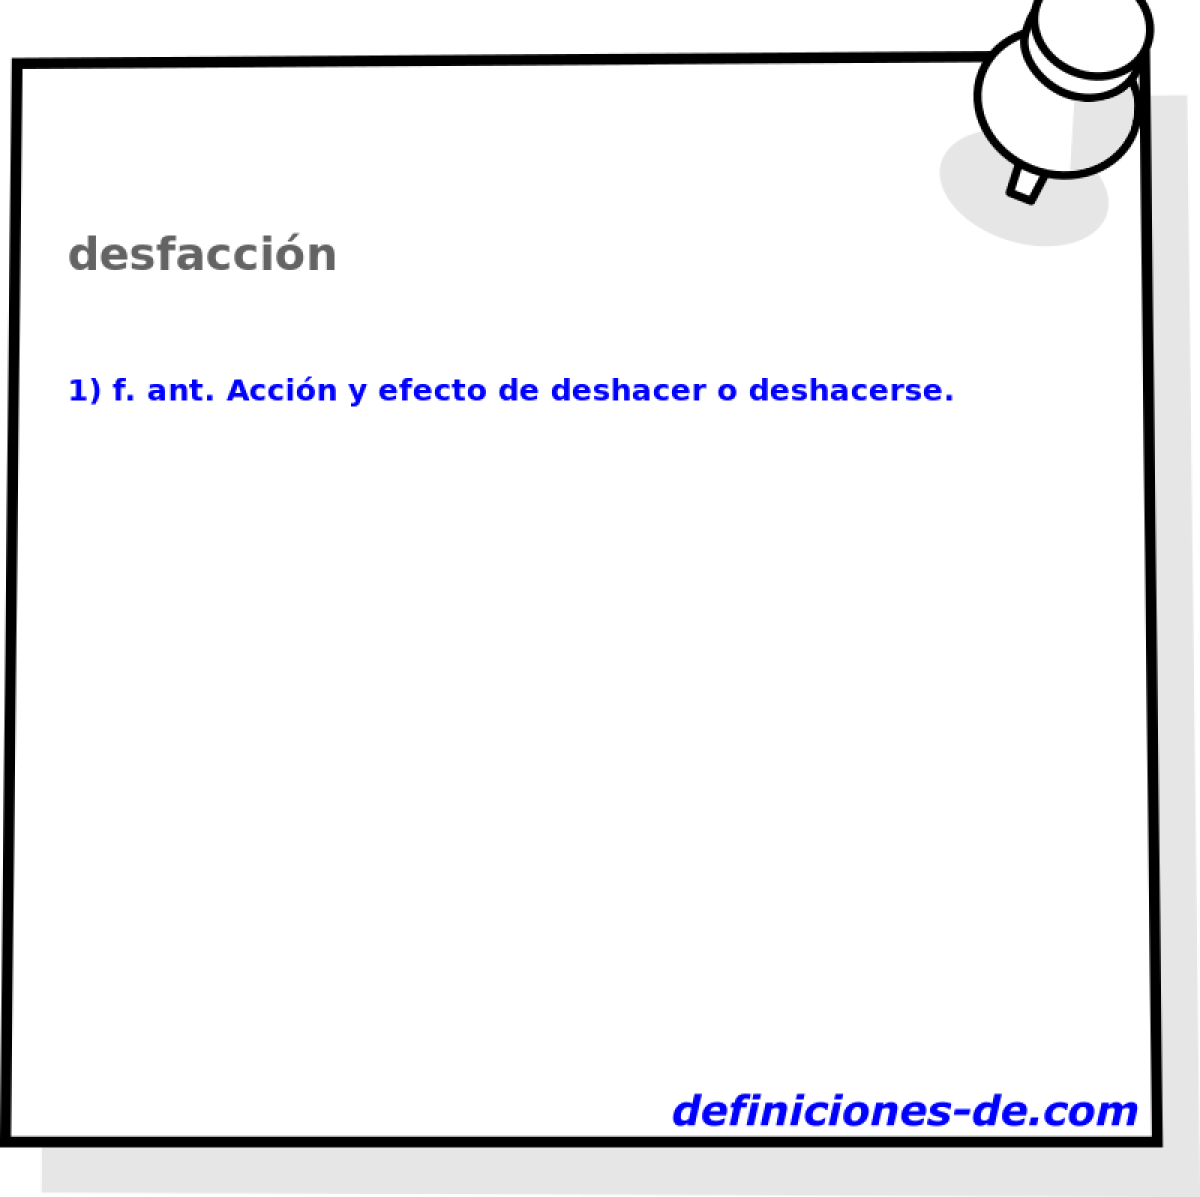 desfaccin 